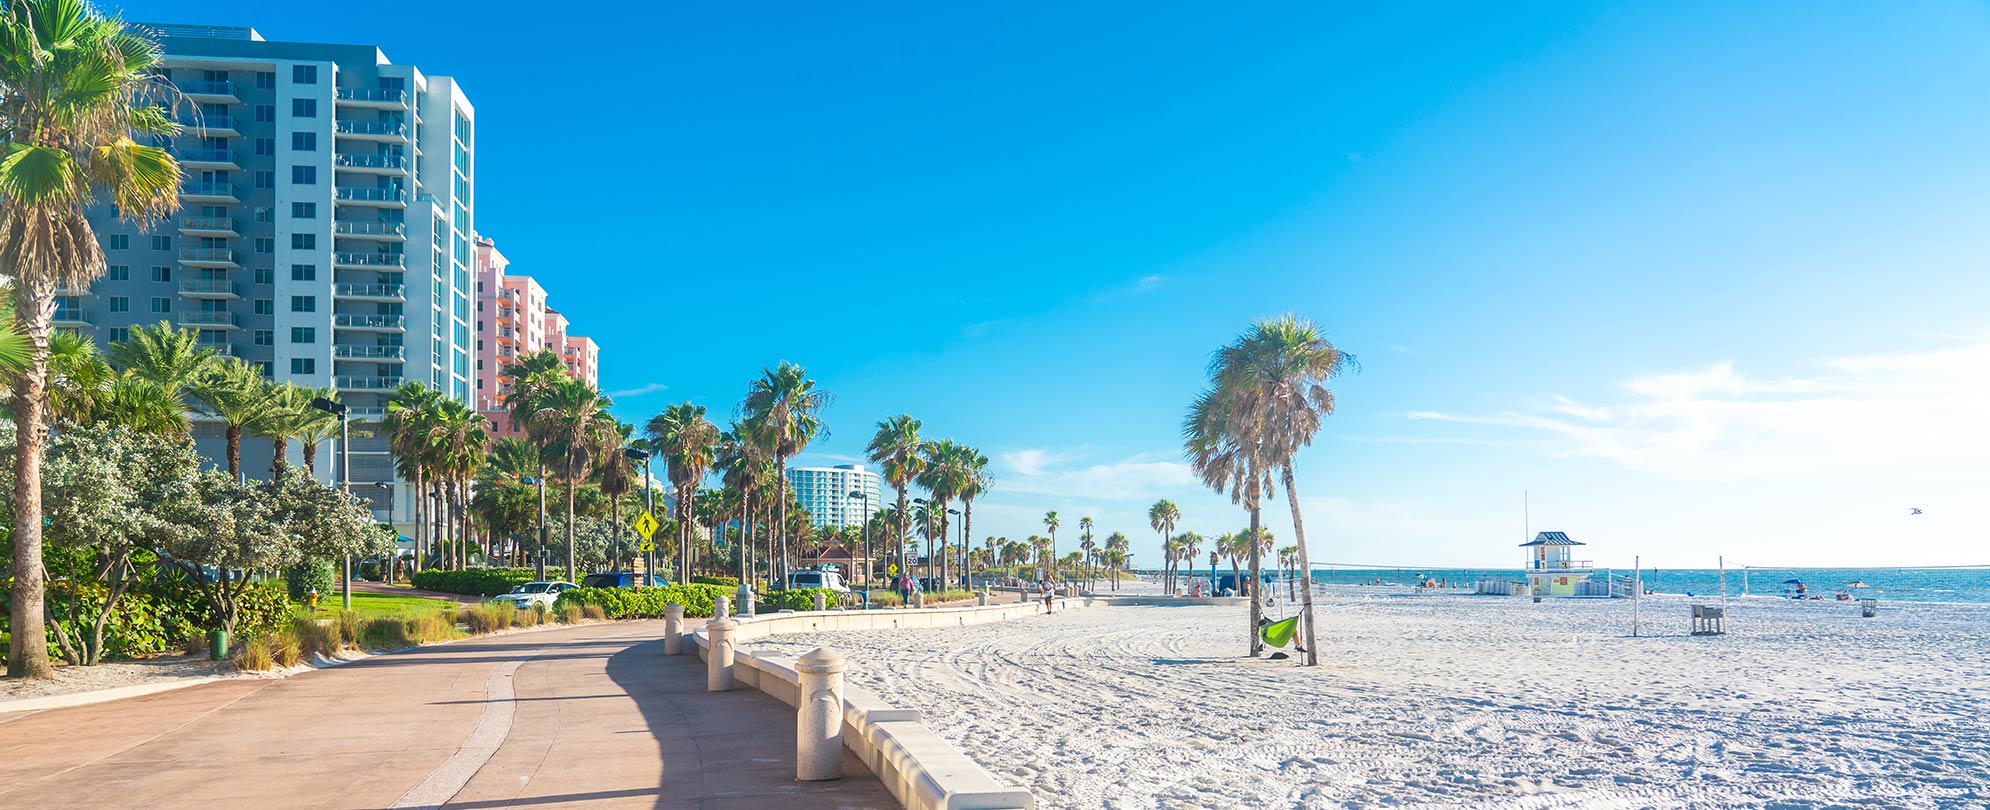 Best Beach Destinations For Your Next Summer Vacation — Club Wyndham